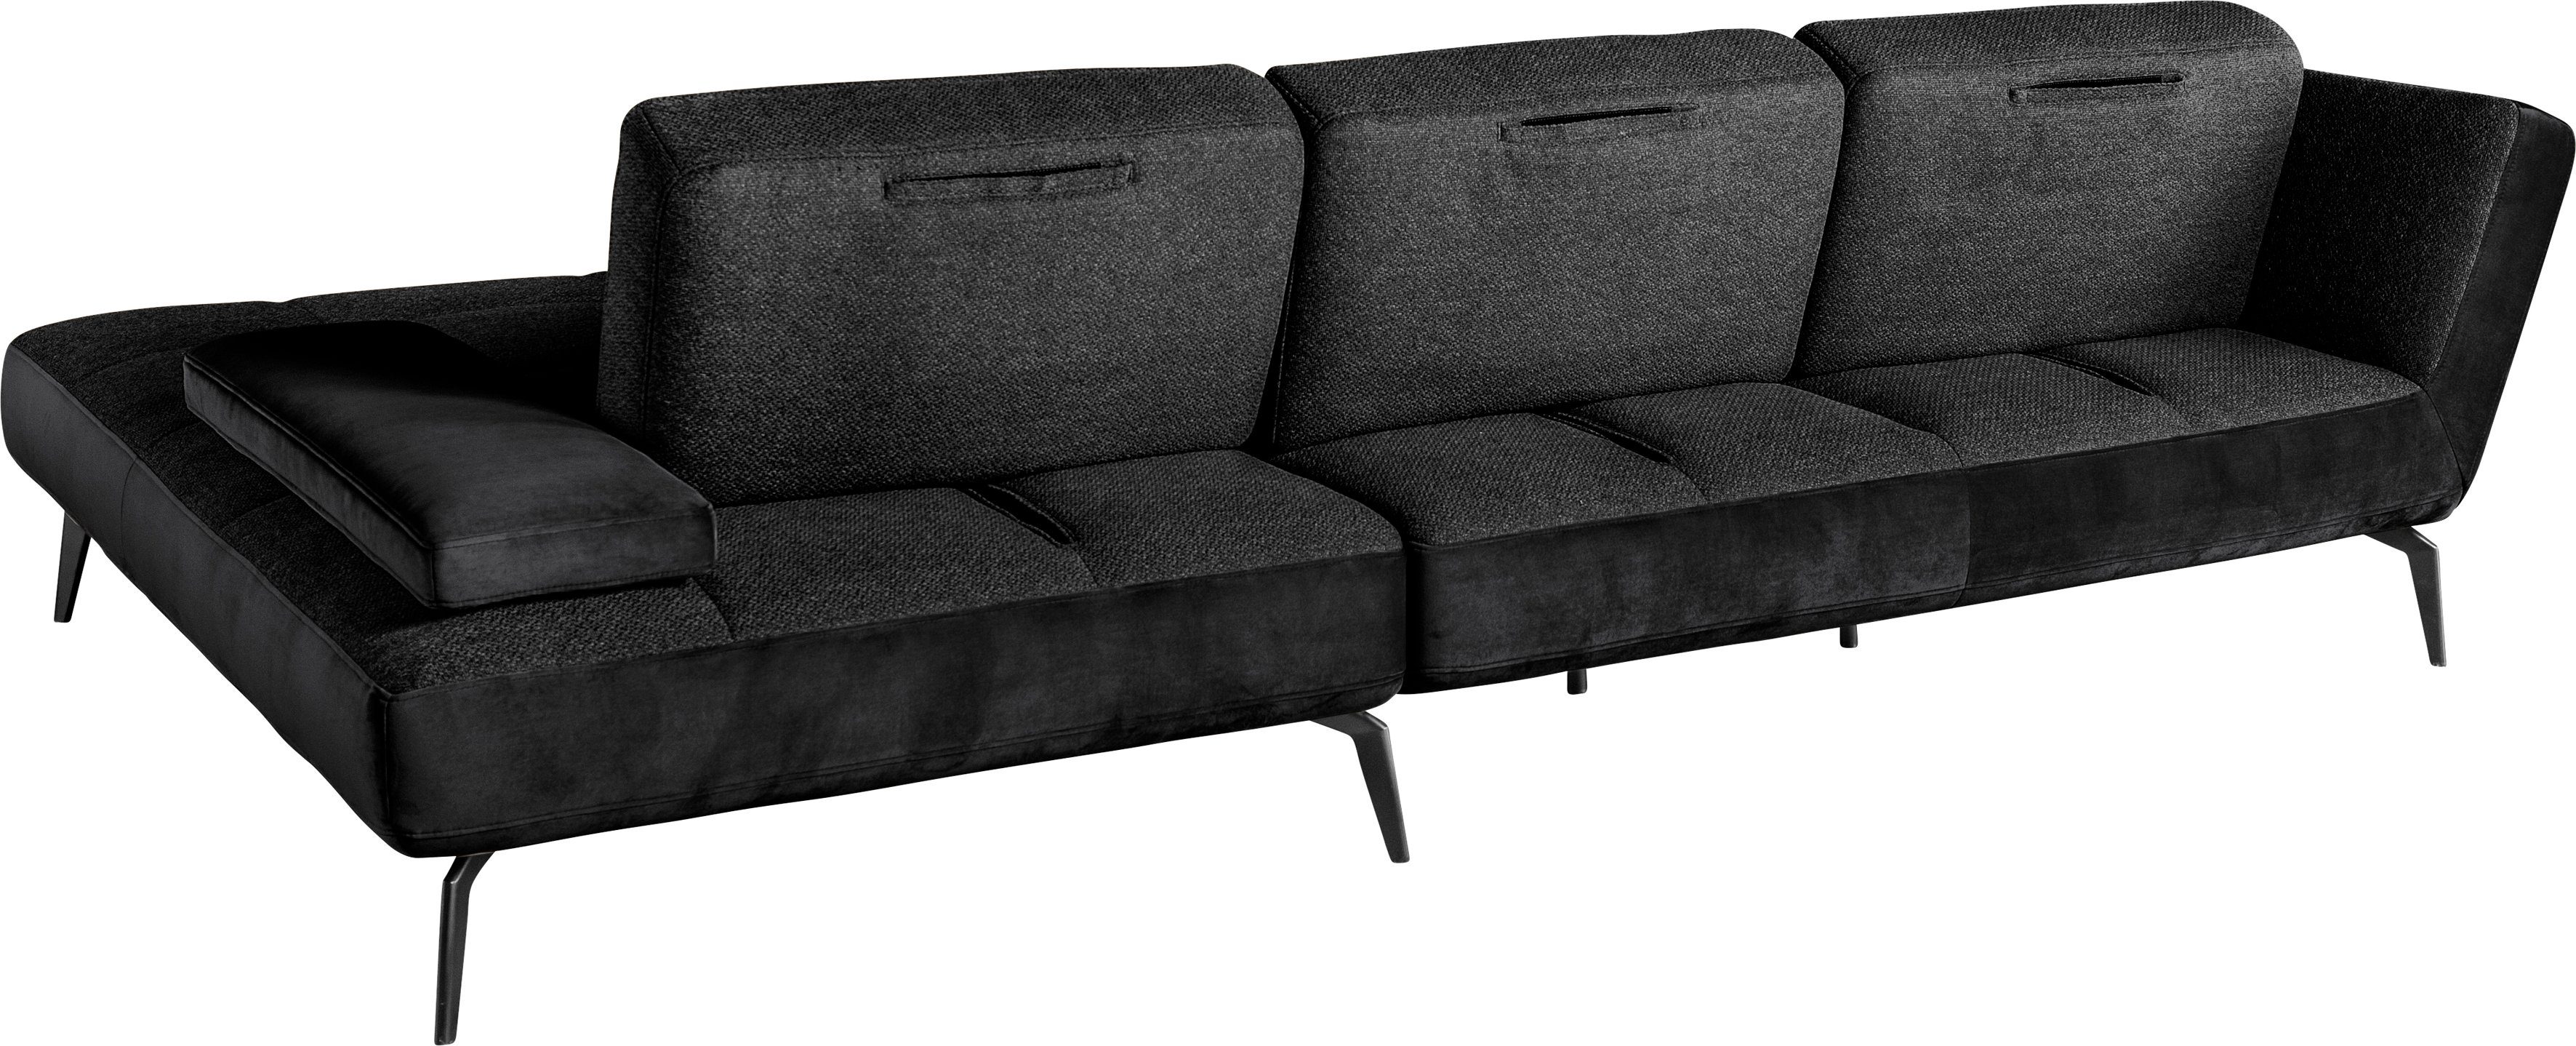 Nierenkissen Sitztiefenverstellung set 4300, Ecksofa inklusive SO und Musterring by charcoal169/schwarz100 one